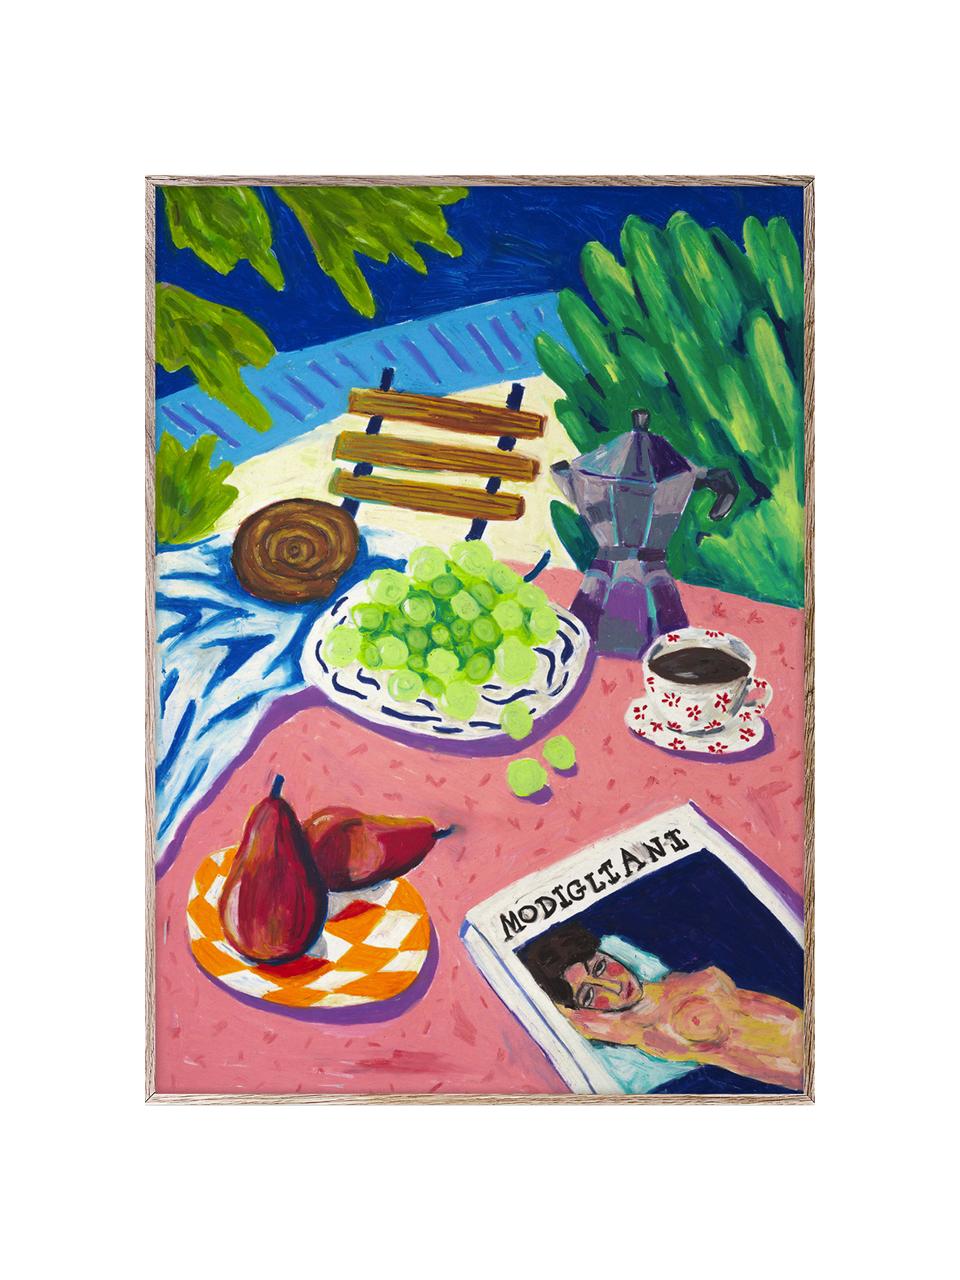 Plakat Modigliani in the Garden, 210 g matowy papier, druk cyfrowy z 10 farbami odpornymi na promieniowanie UV, Wielobarwny, S 30 x W 40 cm